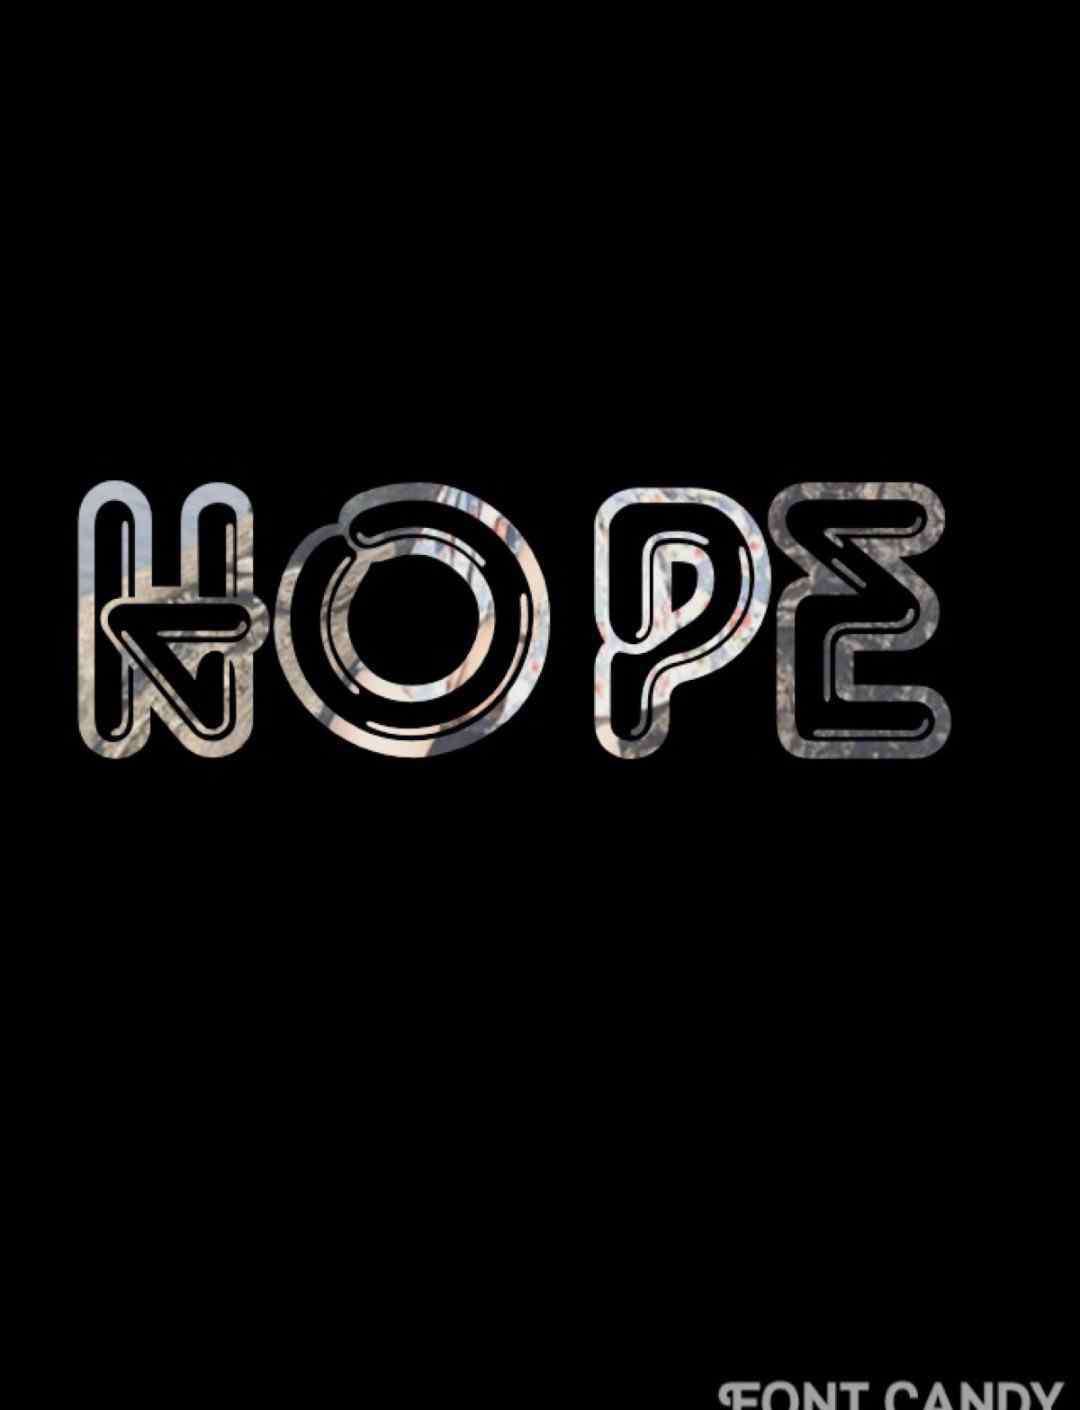 hope的用法 hope的用法 hope的用法总结